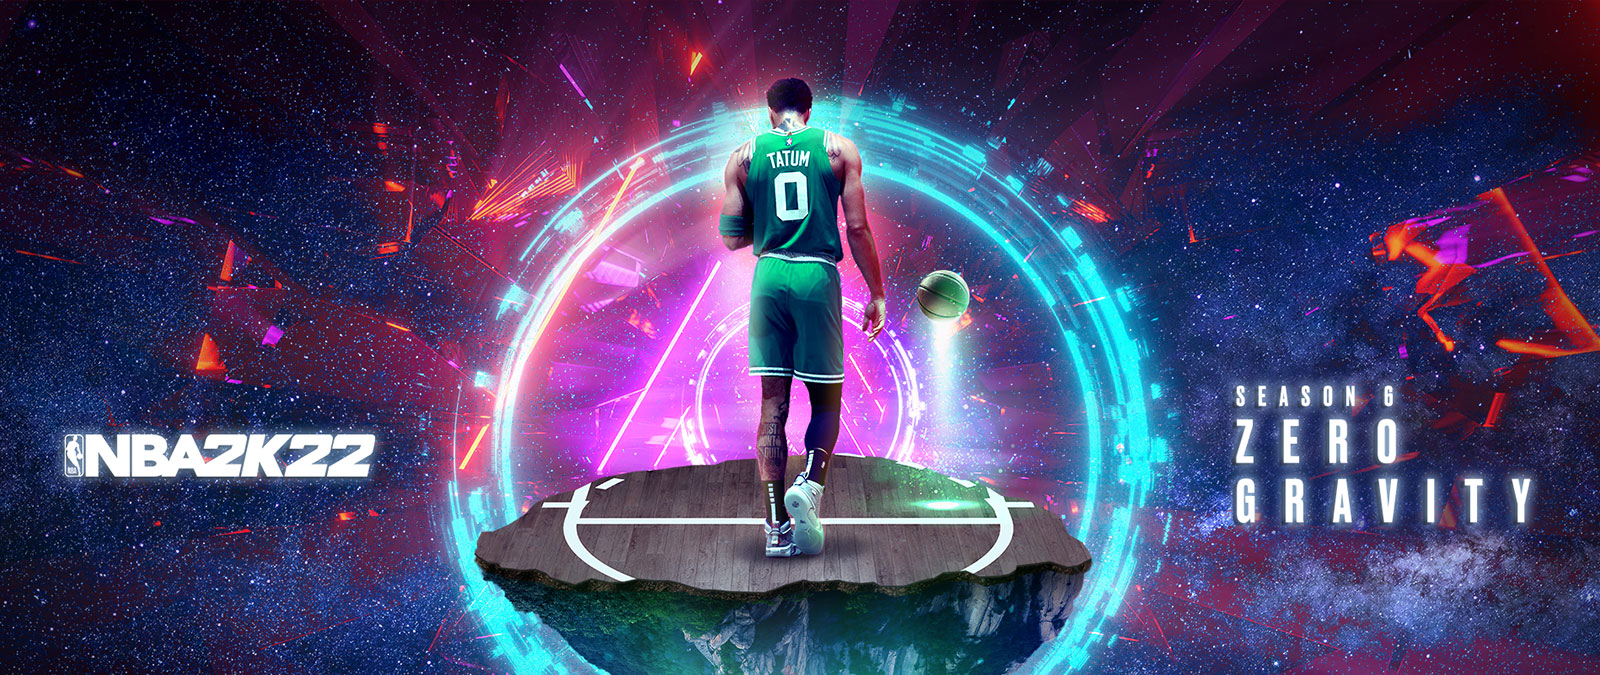 NBA 2K22, Temporada 6 Zero Gravity, Tatum está de pie sobre un trozo de cancha de baloncesto flotante en el espacio con anillos de energía que lo rodean.